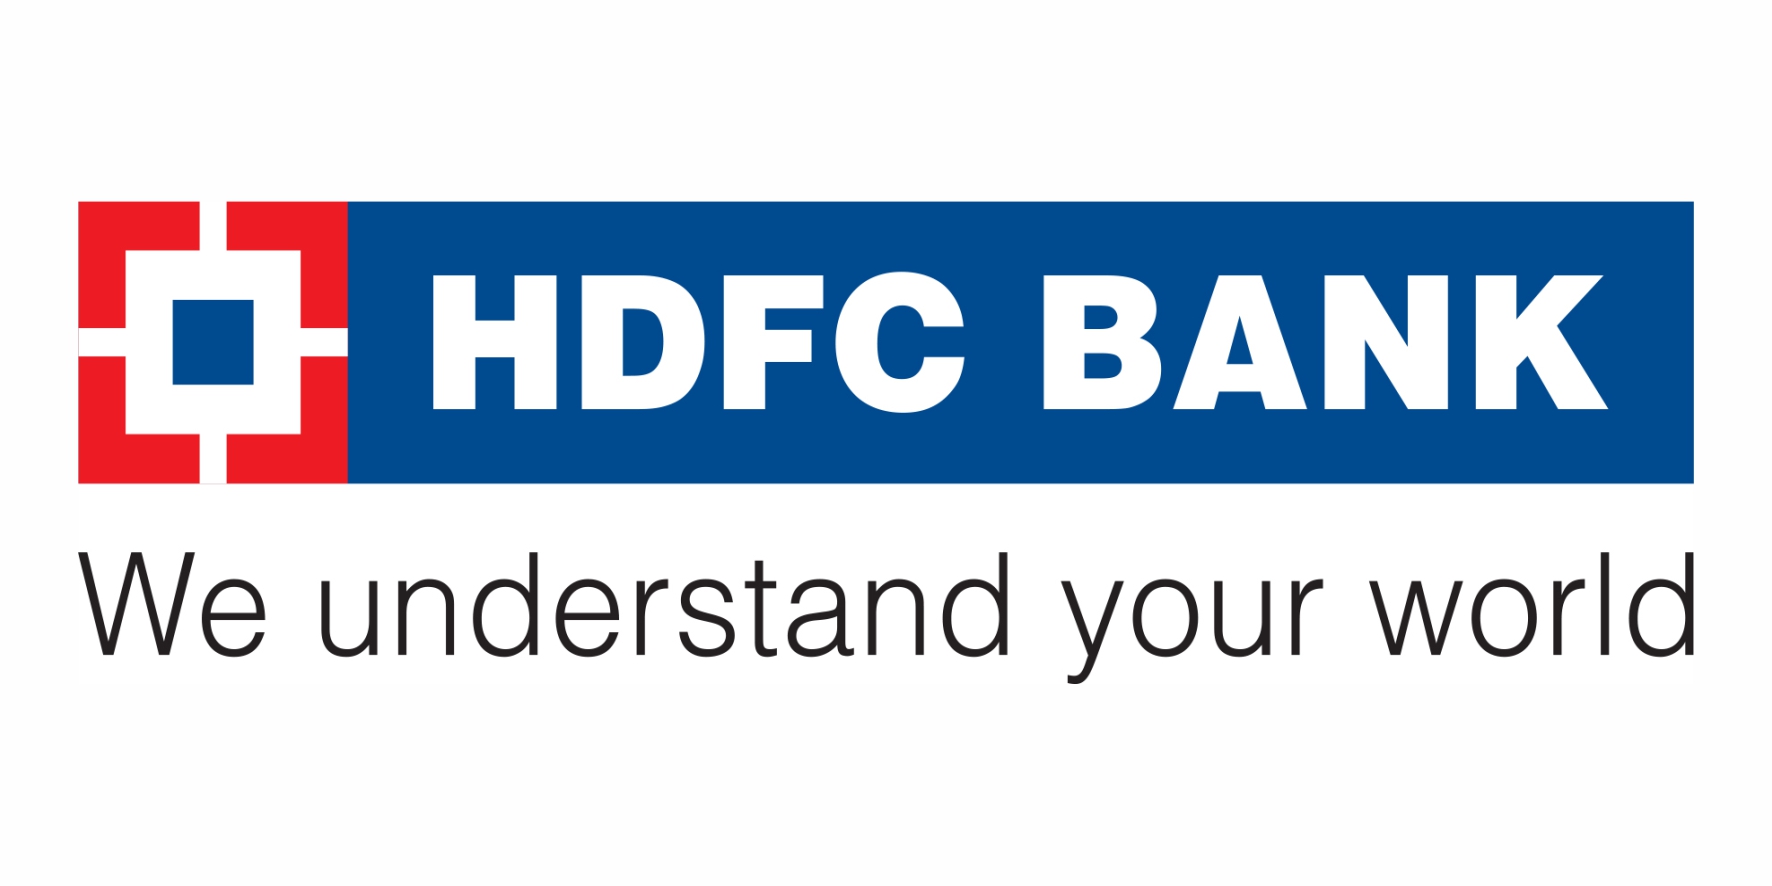 HDFC BANK We